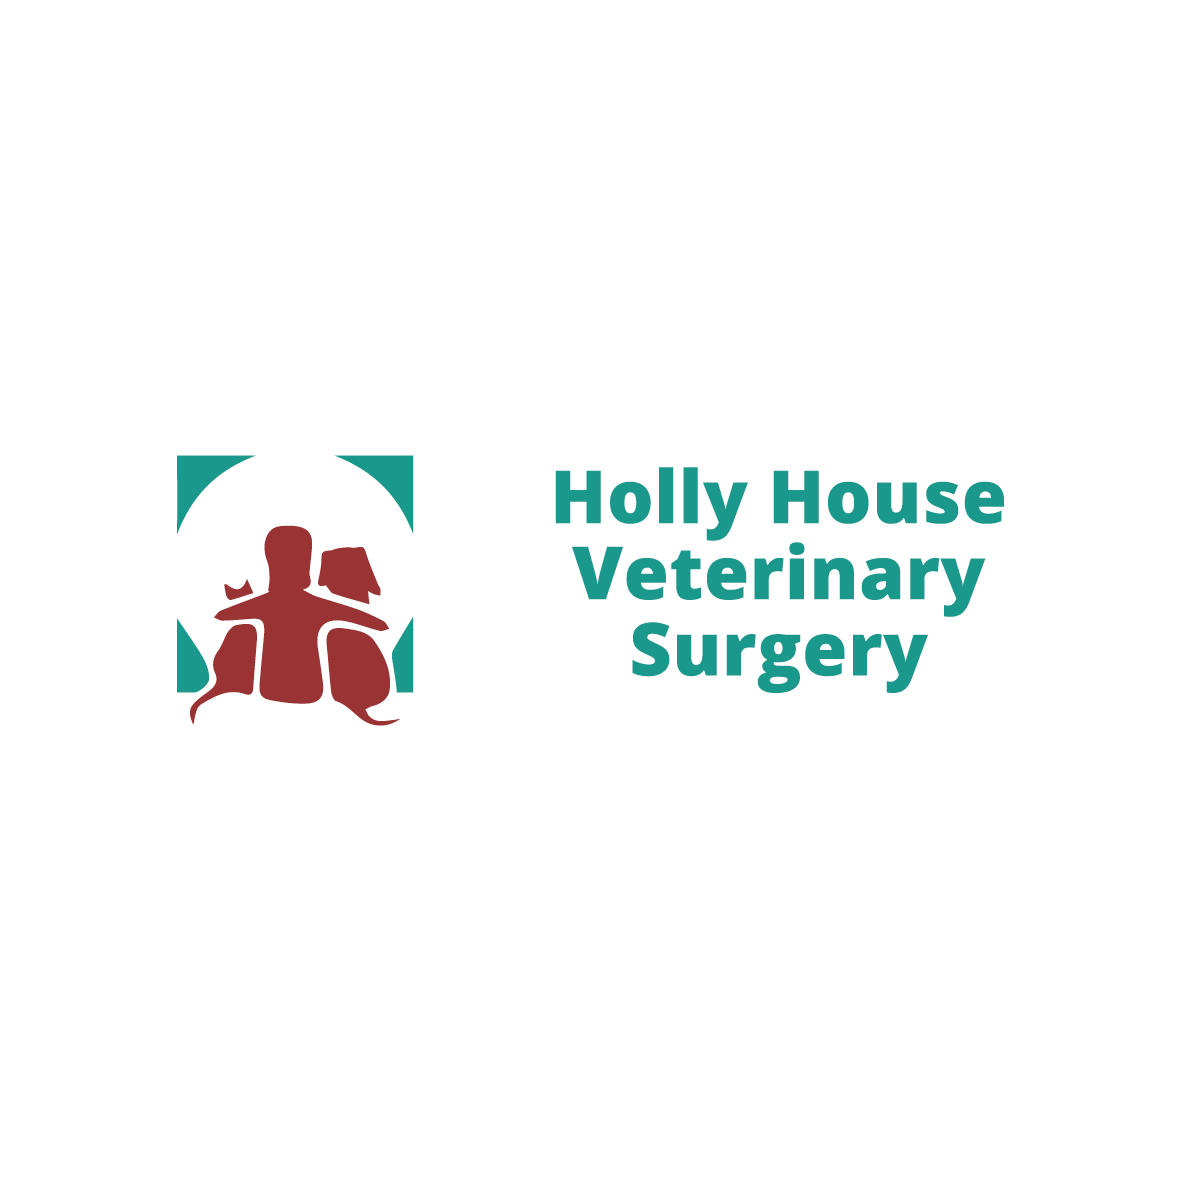 Willows Veterinary Group - Holly House Veterinary Surgery Logo